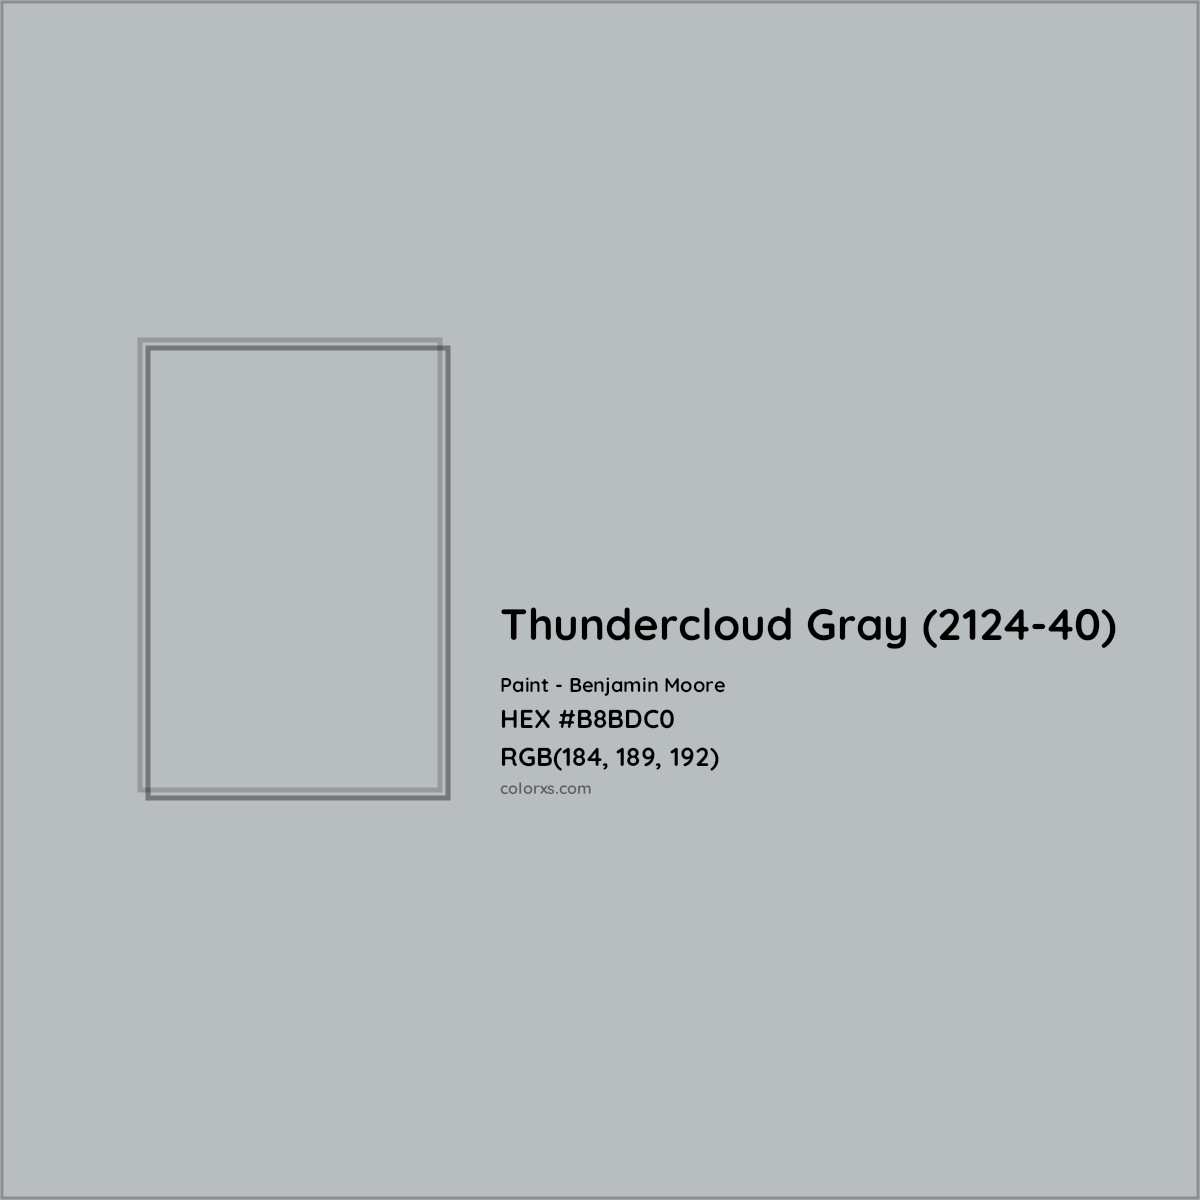 HEX #B8BDC0 Thundercloud Gray (2124-40) Paint Benjamin Moore - Color Code